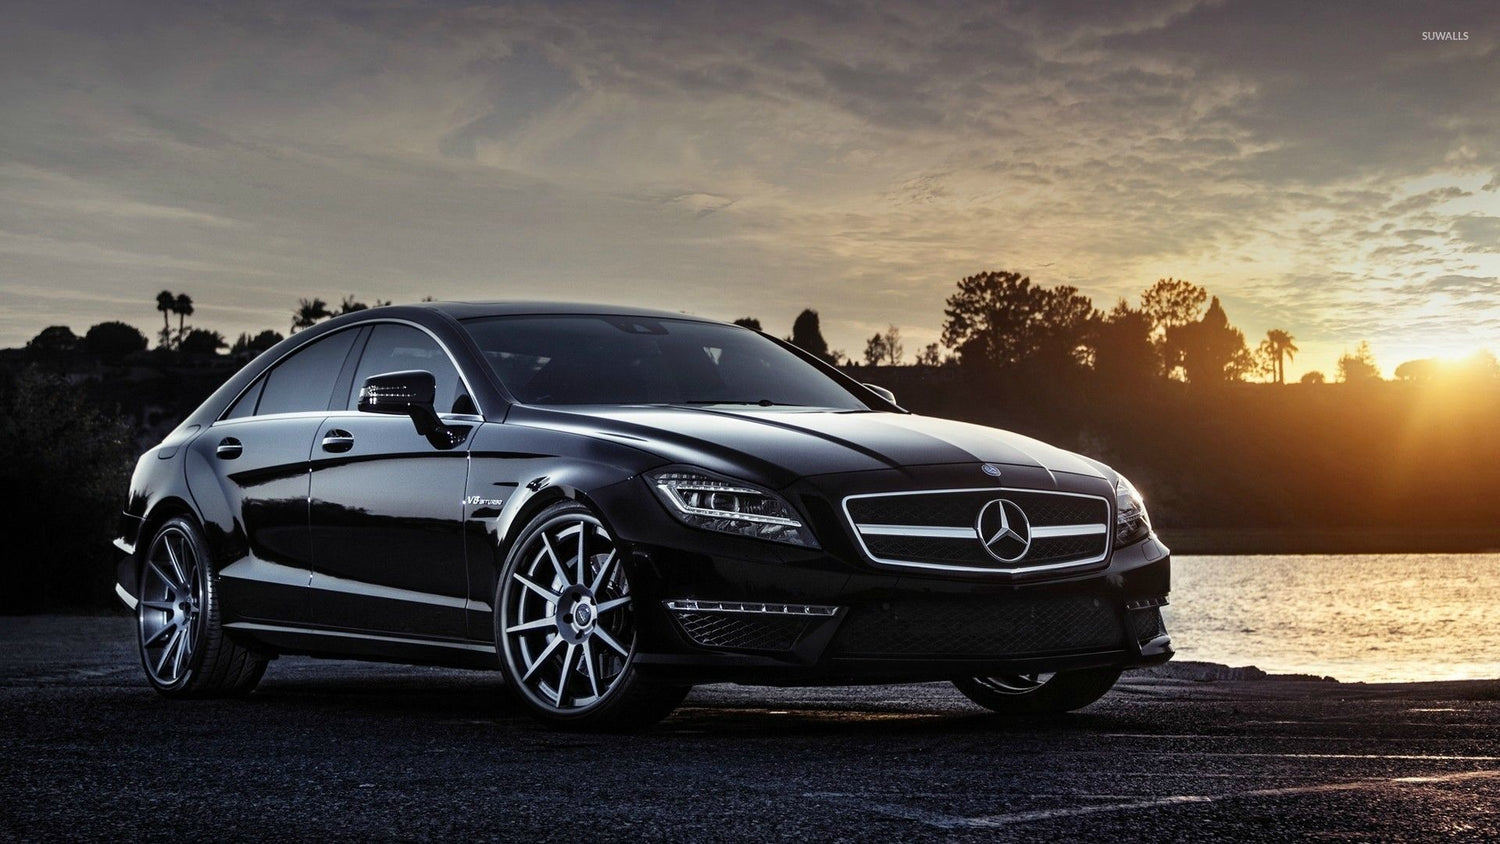 Mercedes kollektion - AMG emblemer, logoer og styling